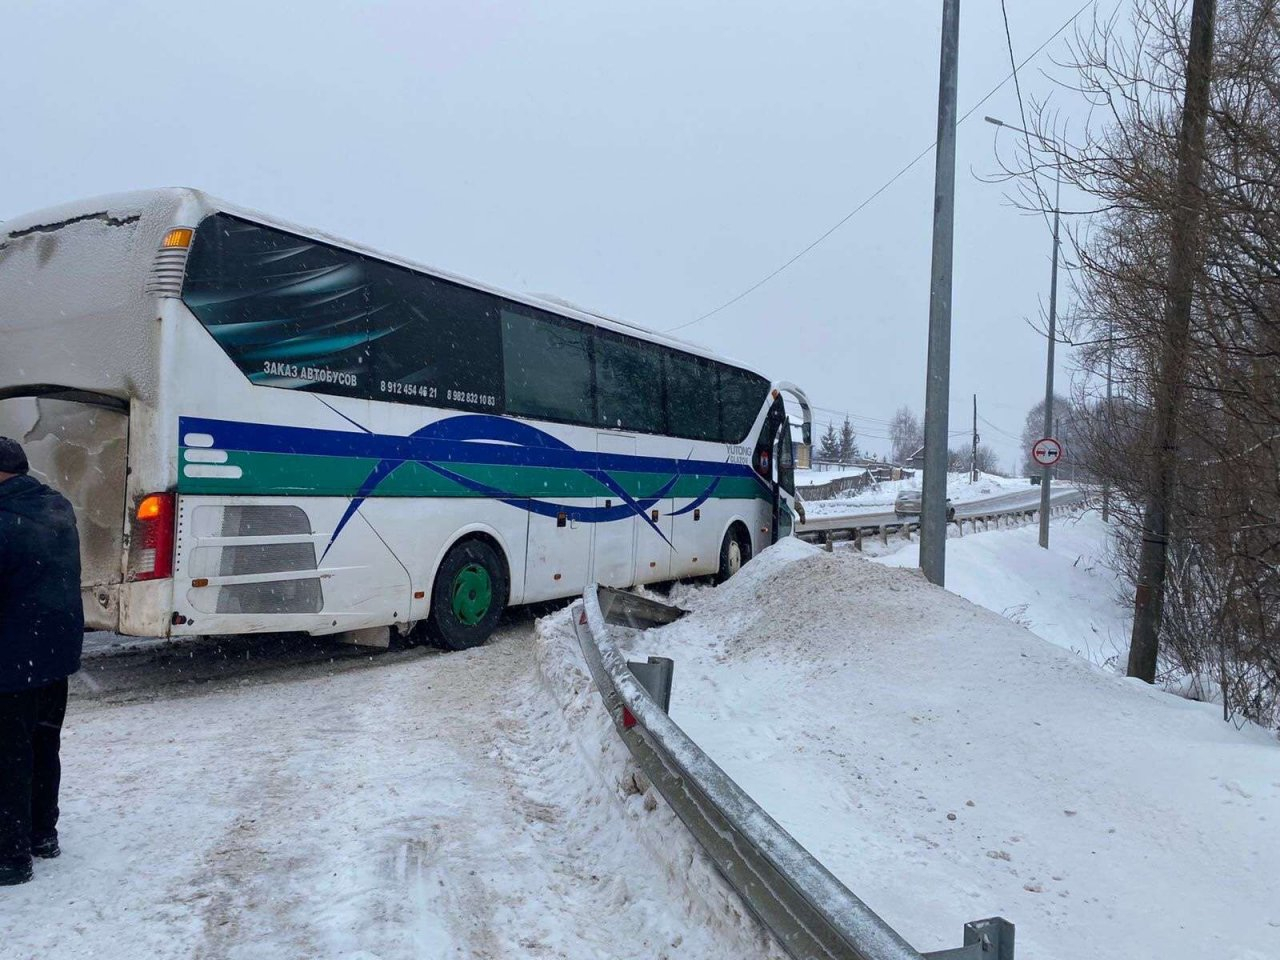 На трассе в Кирово-Чепецком районе автобус с пассажирами врезался в трактор